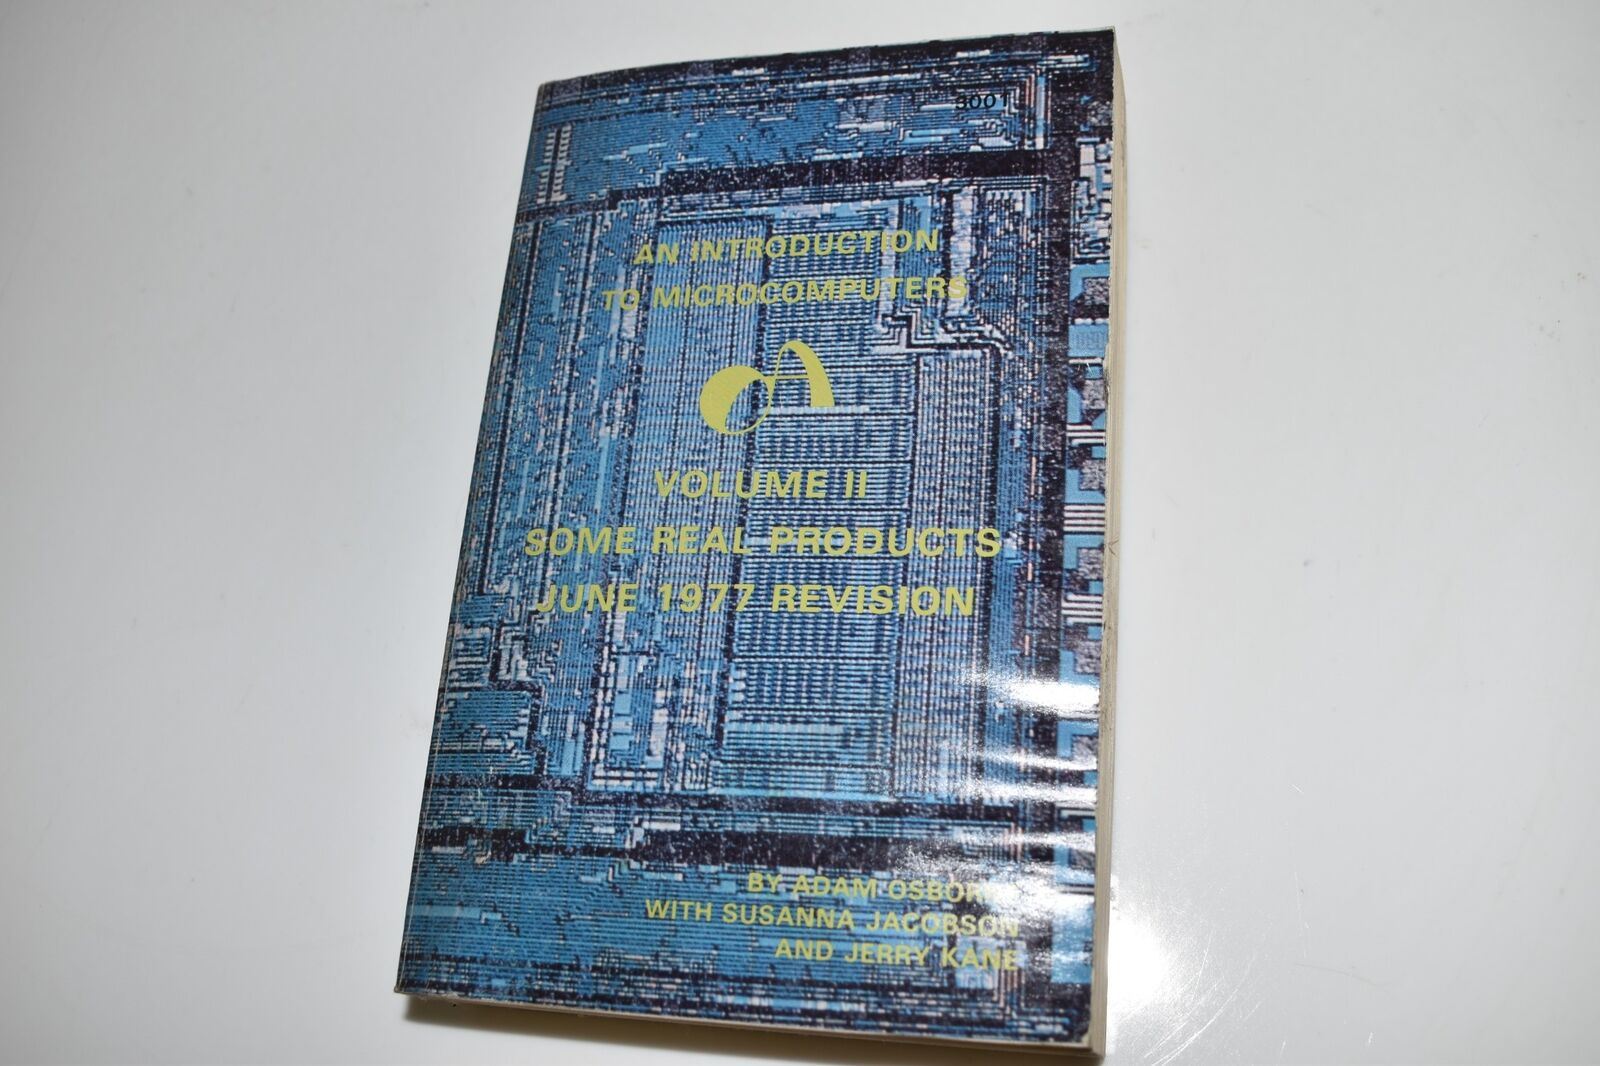 *KB* Introduction to Microcomputers Vol 2:  Book Adam Osborne  (TKA62)